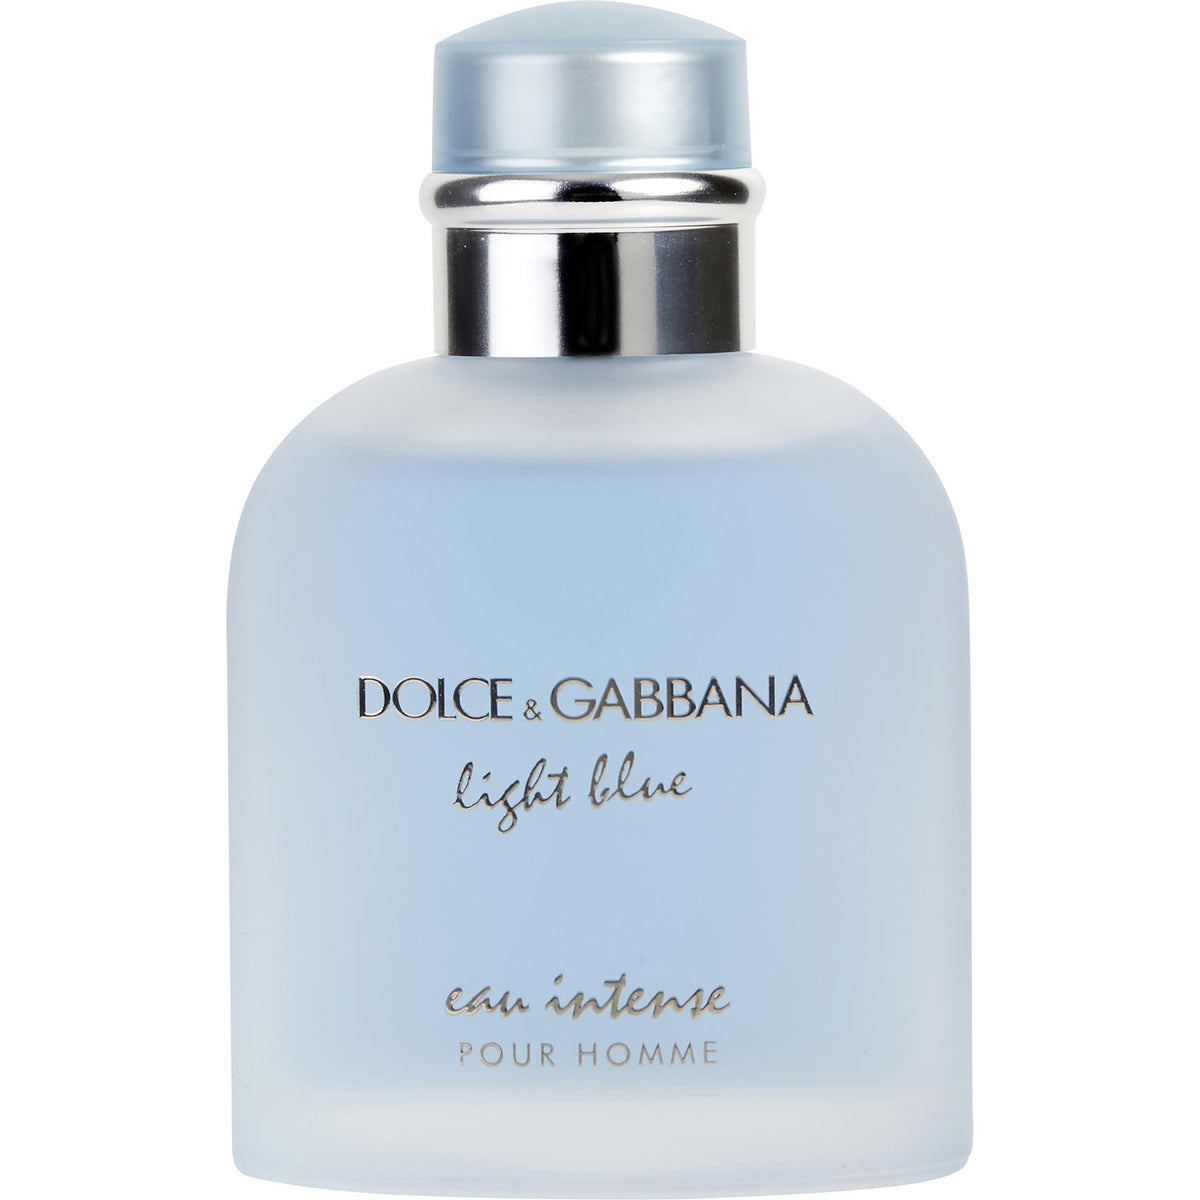 Dolce&Gabbana Light Intense Pour Homme Eau Parfum for Men – DecantX Perfume & Cologne Decant Fragrance Samples